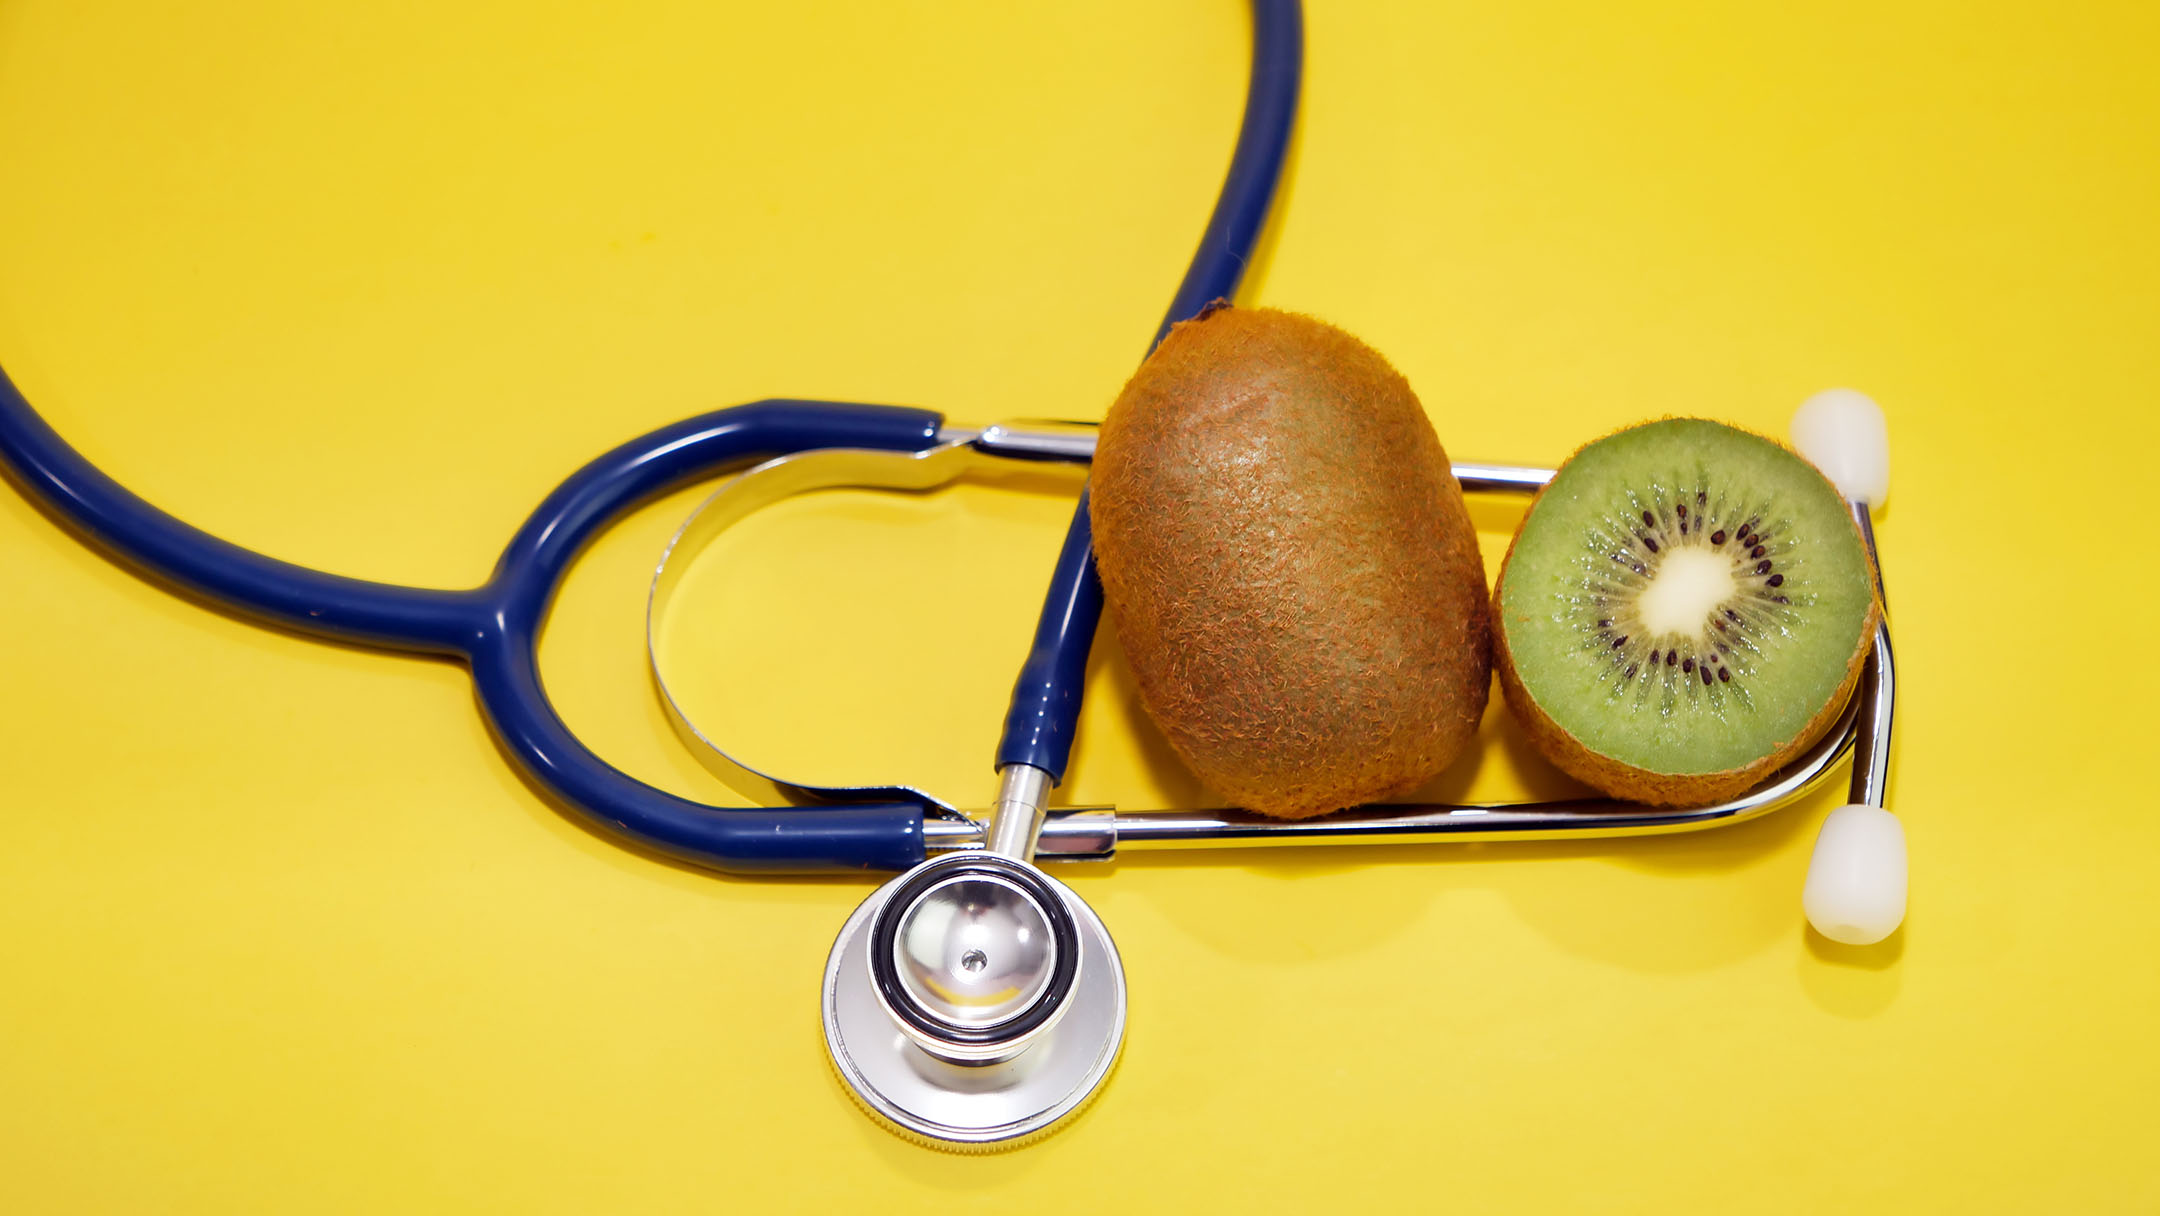 Whole kiwi fruit and halved green kiwifruit encircled within navy blue stethoscope